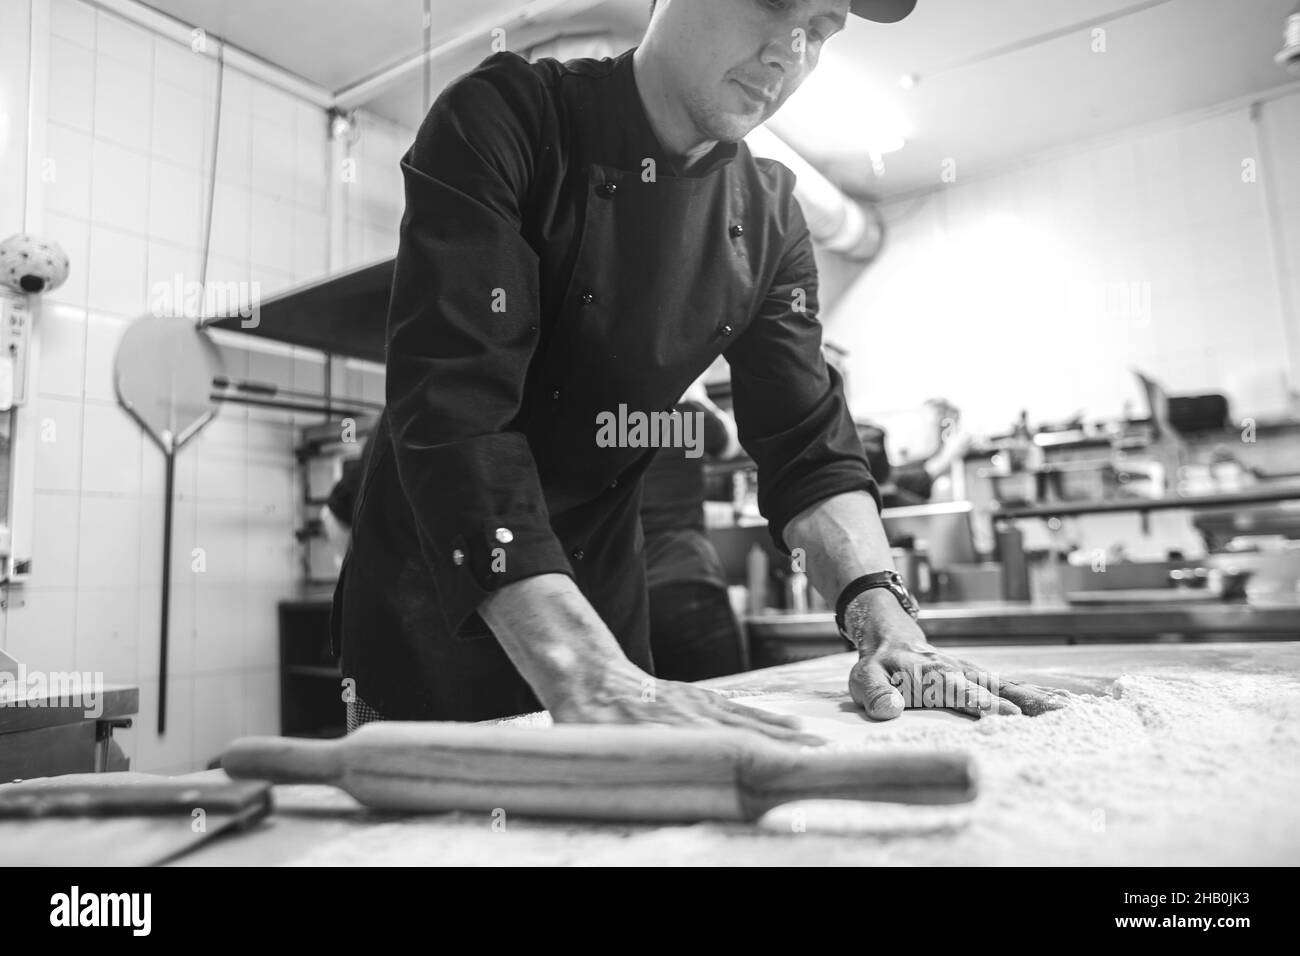 Chef cuisinier professionnel dans le restaurant de cuisine de l'hôtel, préparant le dîner. Un cuisinier dans un tablier fait une pizza. L'homme roule de la pâte à pizza Banque D'Images